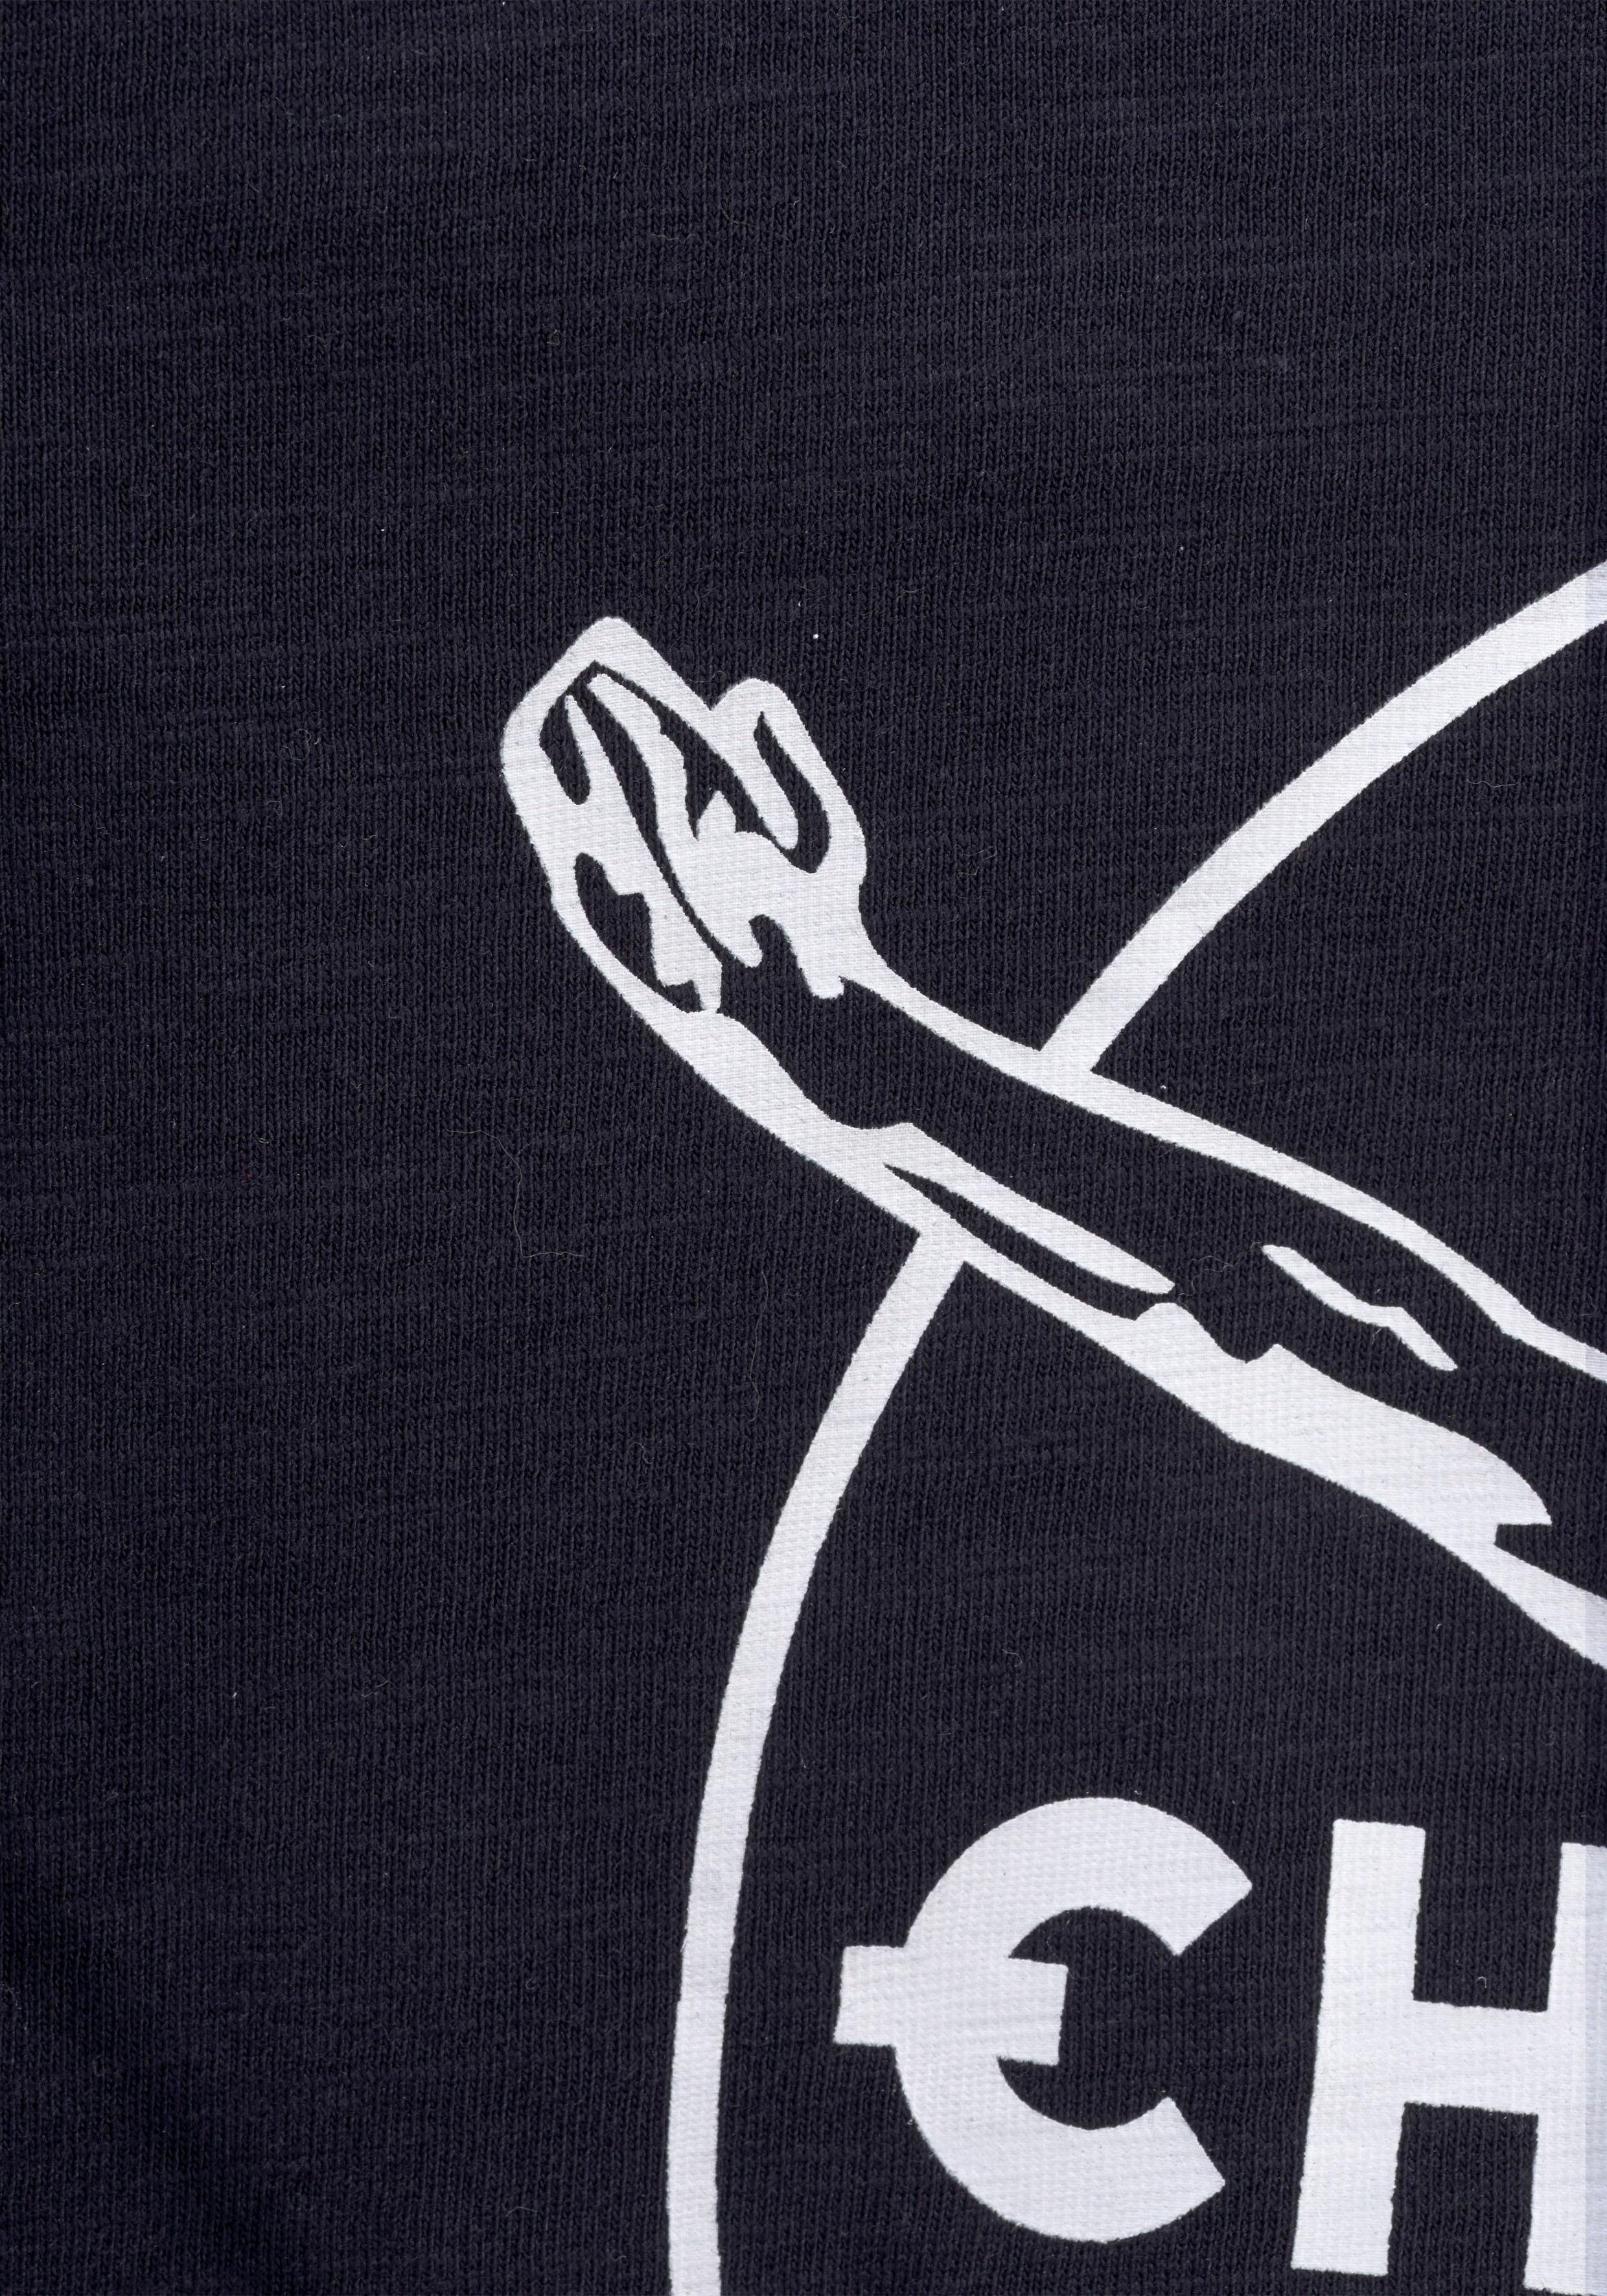 Chiemsee mit BASIC T-Shirt vorn Logodruck